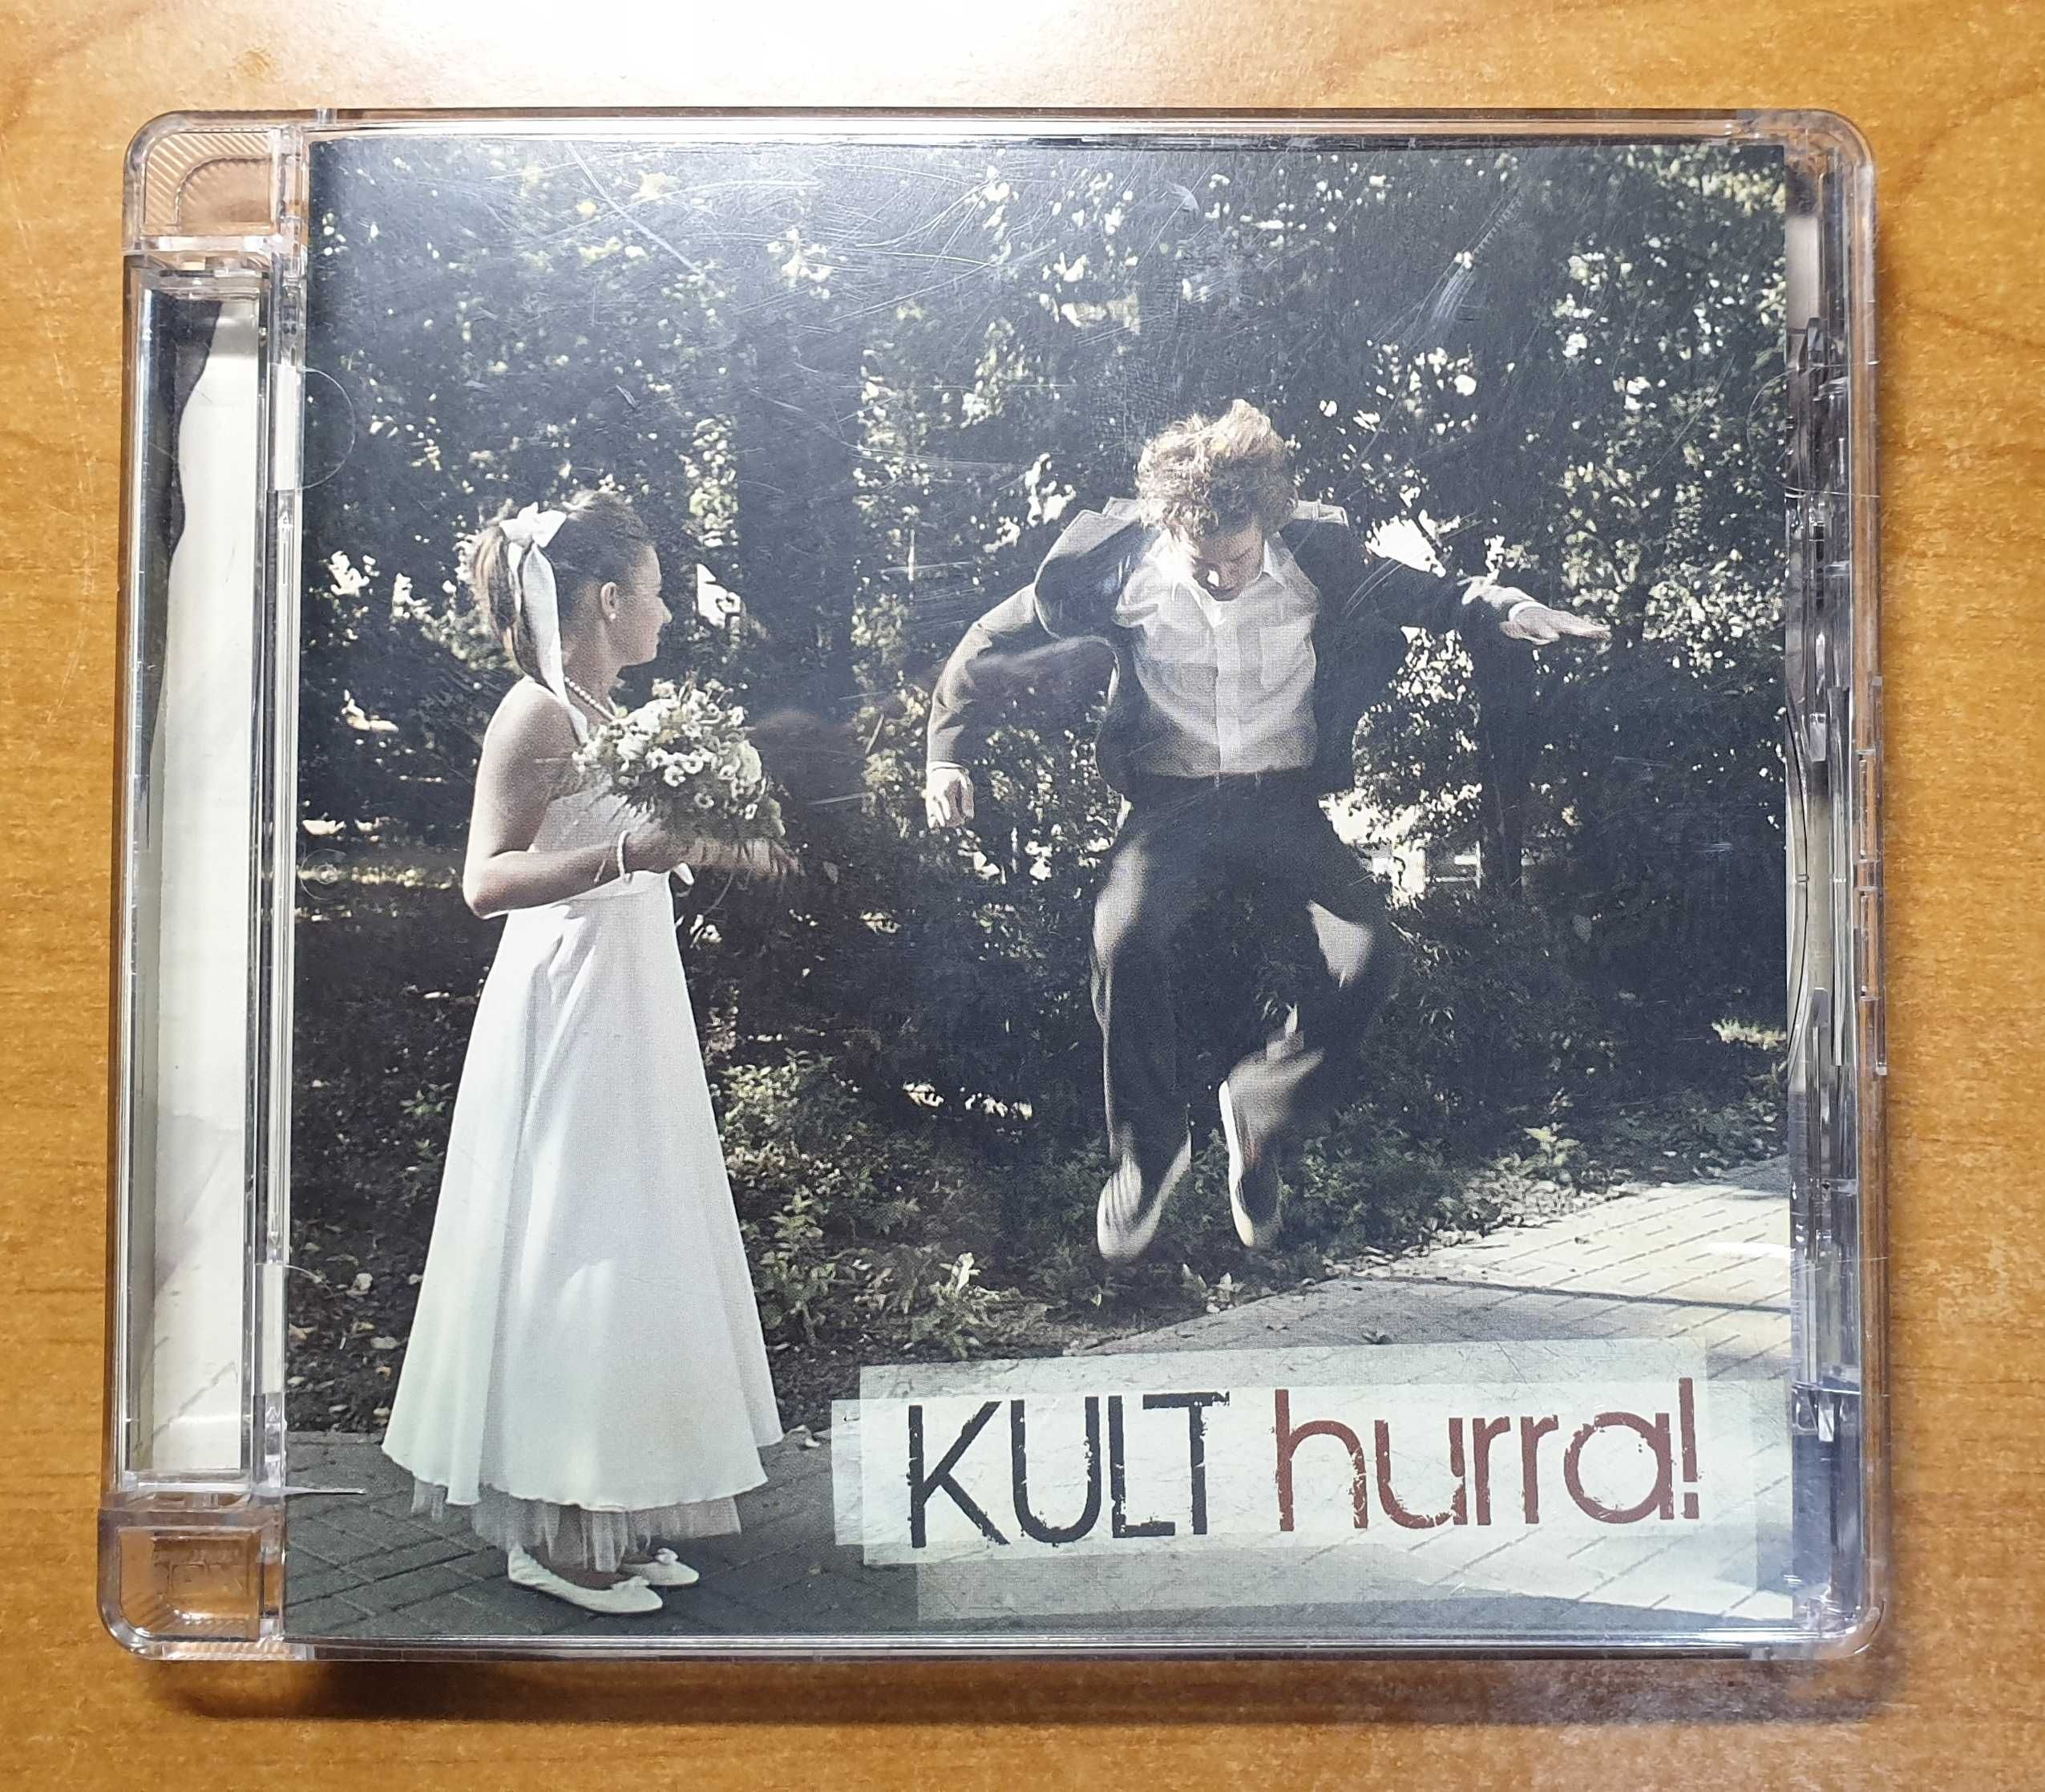 KULT hurra! pierwsze wydanie płyta jak nowa Kazik Staszewski 2009 #1